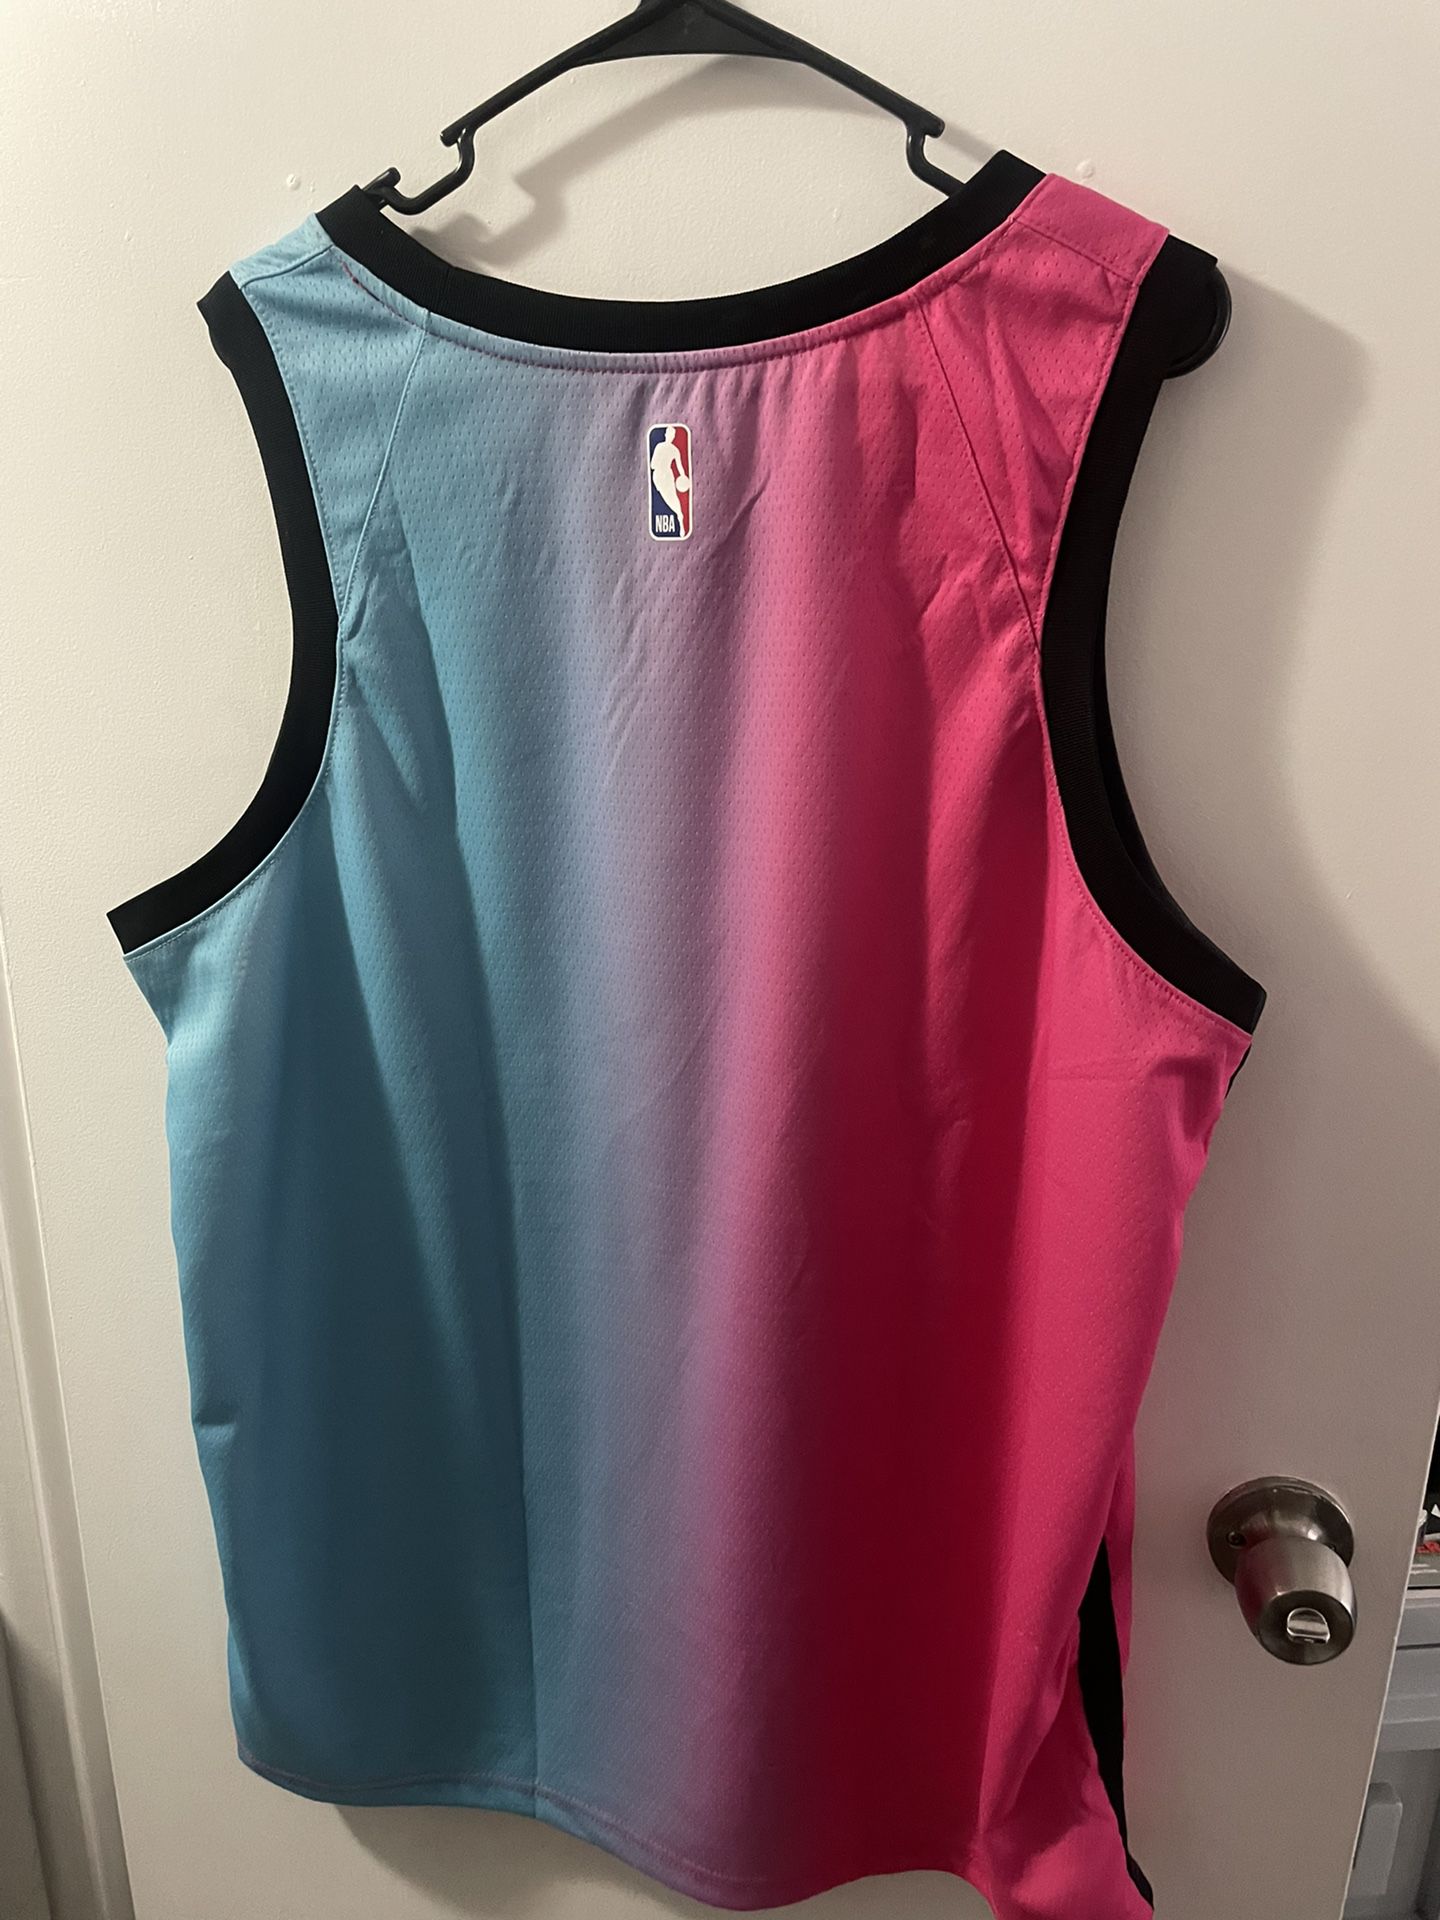 Miami Heat Jersey for Sale in Miami, FL - OfferUp